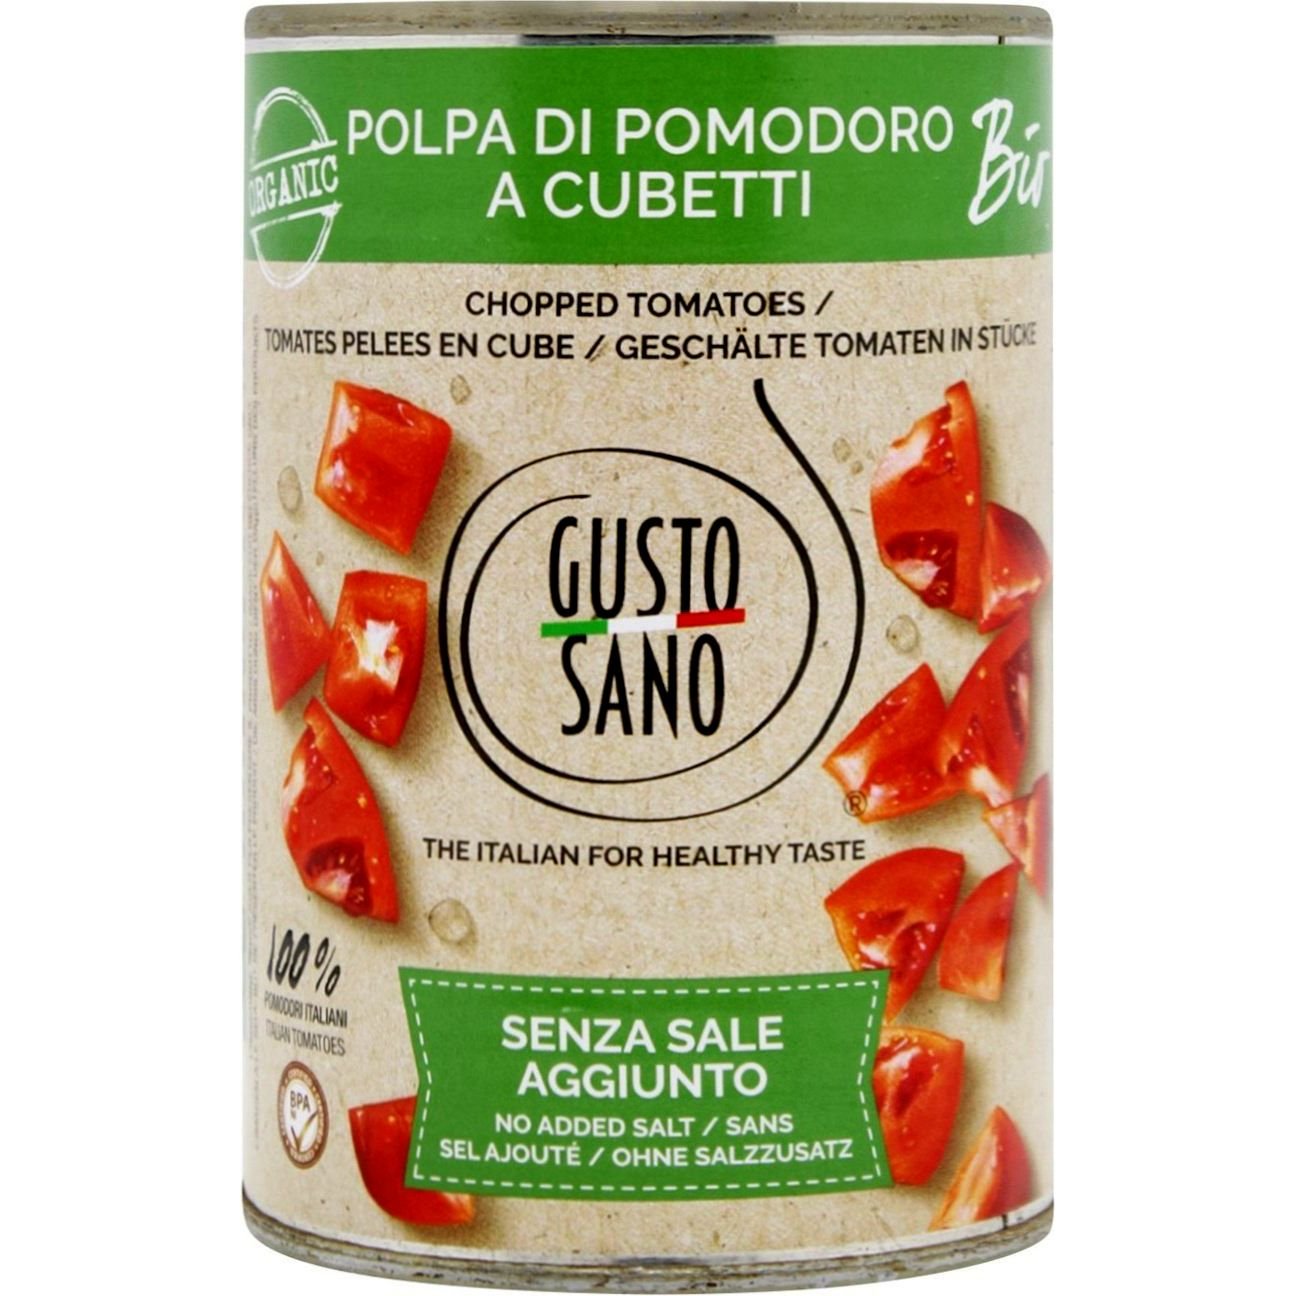 Томаты Gusto Sano Organic Chopped Tomatoes очищенные резаные кубиками органические 400 г - фото 1